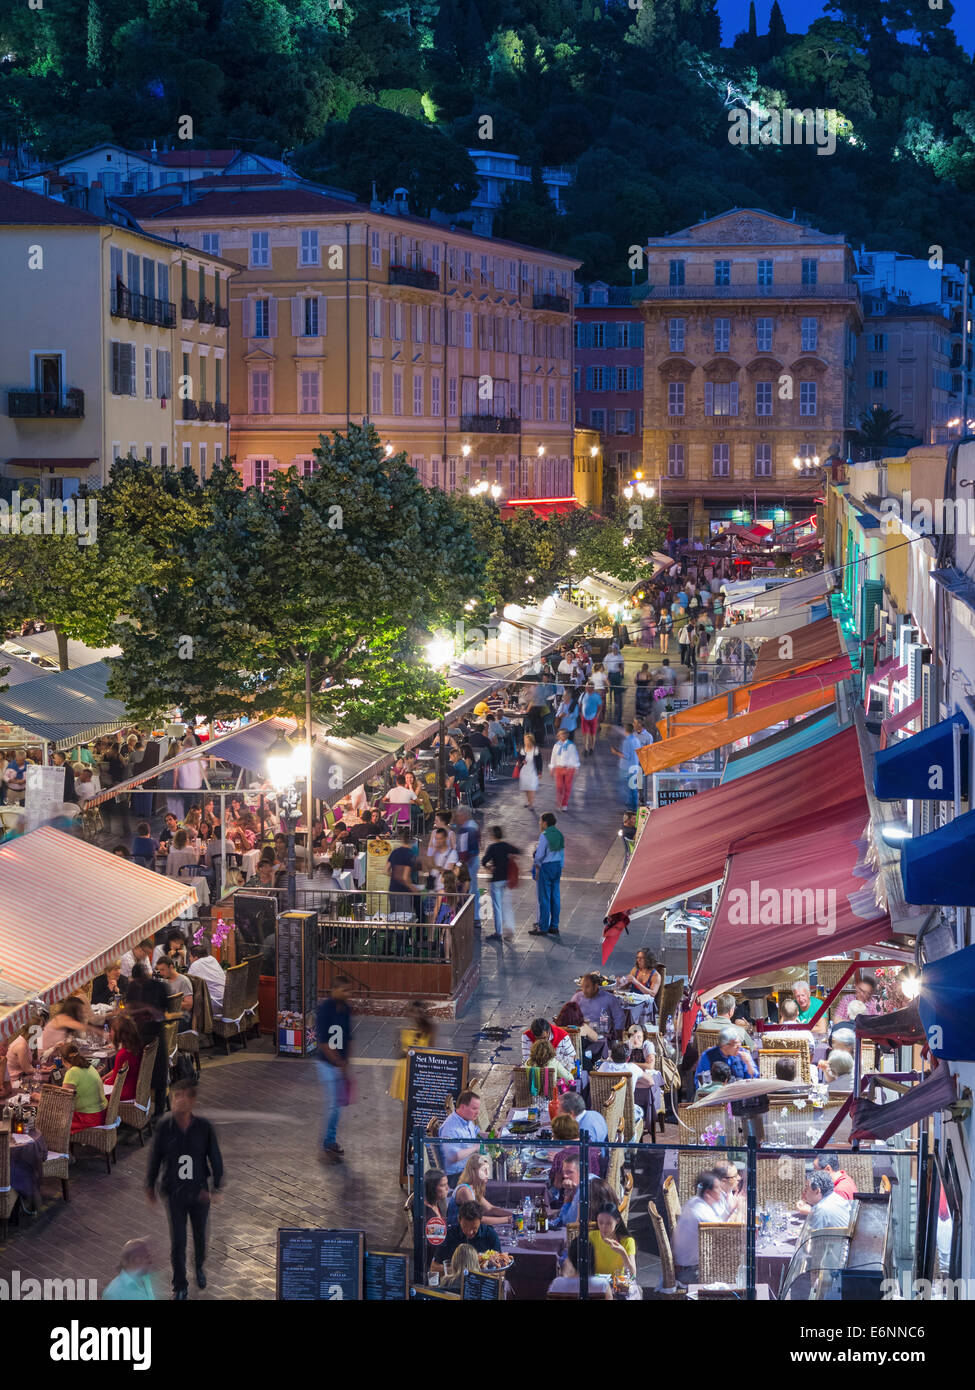 Nizza, Frankreich - Restaurants in der Altstadt von Nizza, Frankreich bei Nacht Stockfoto